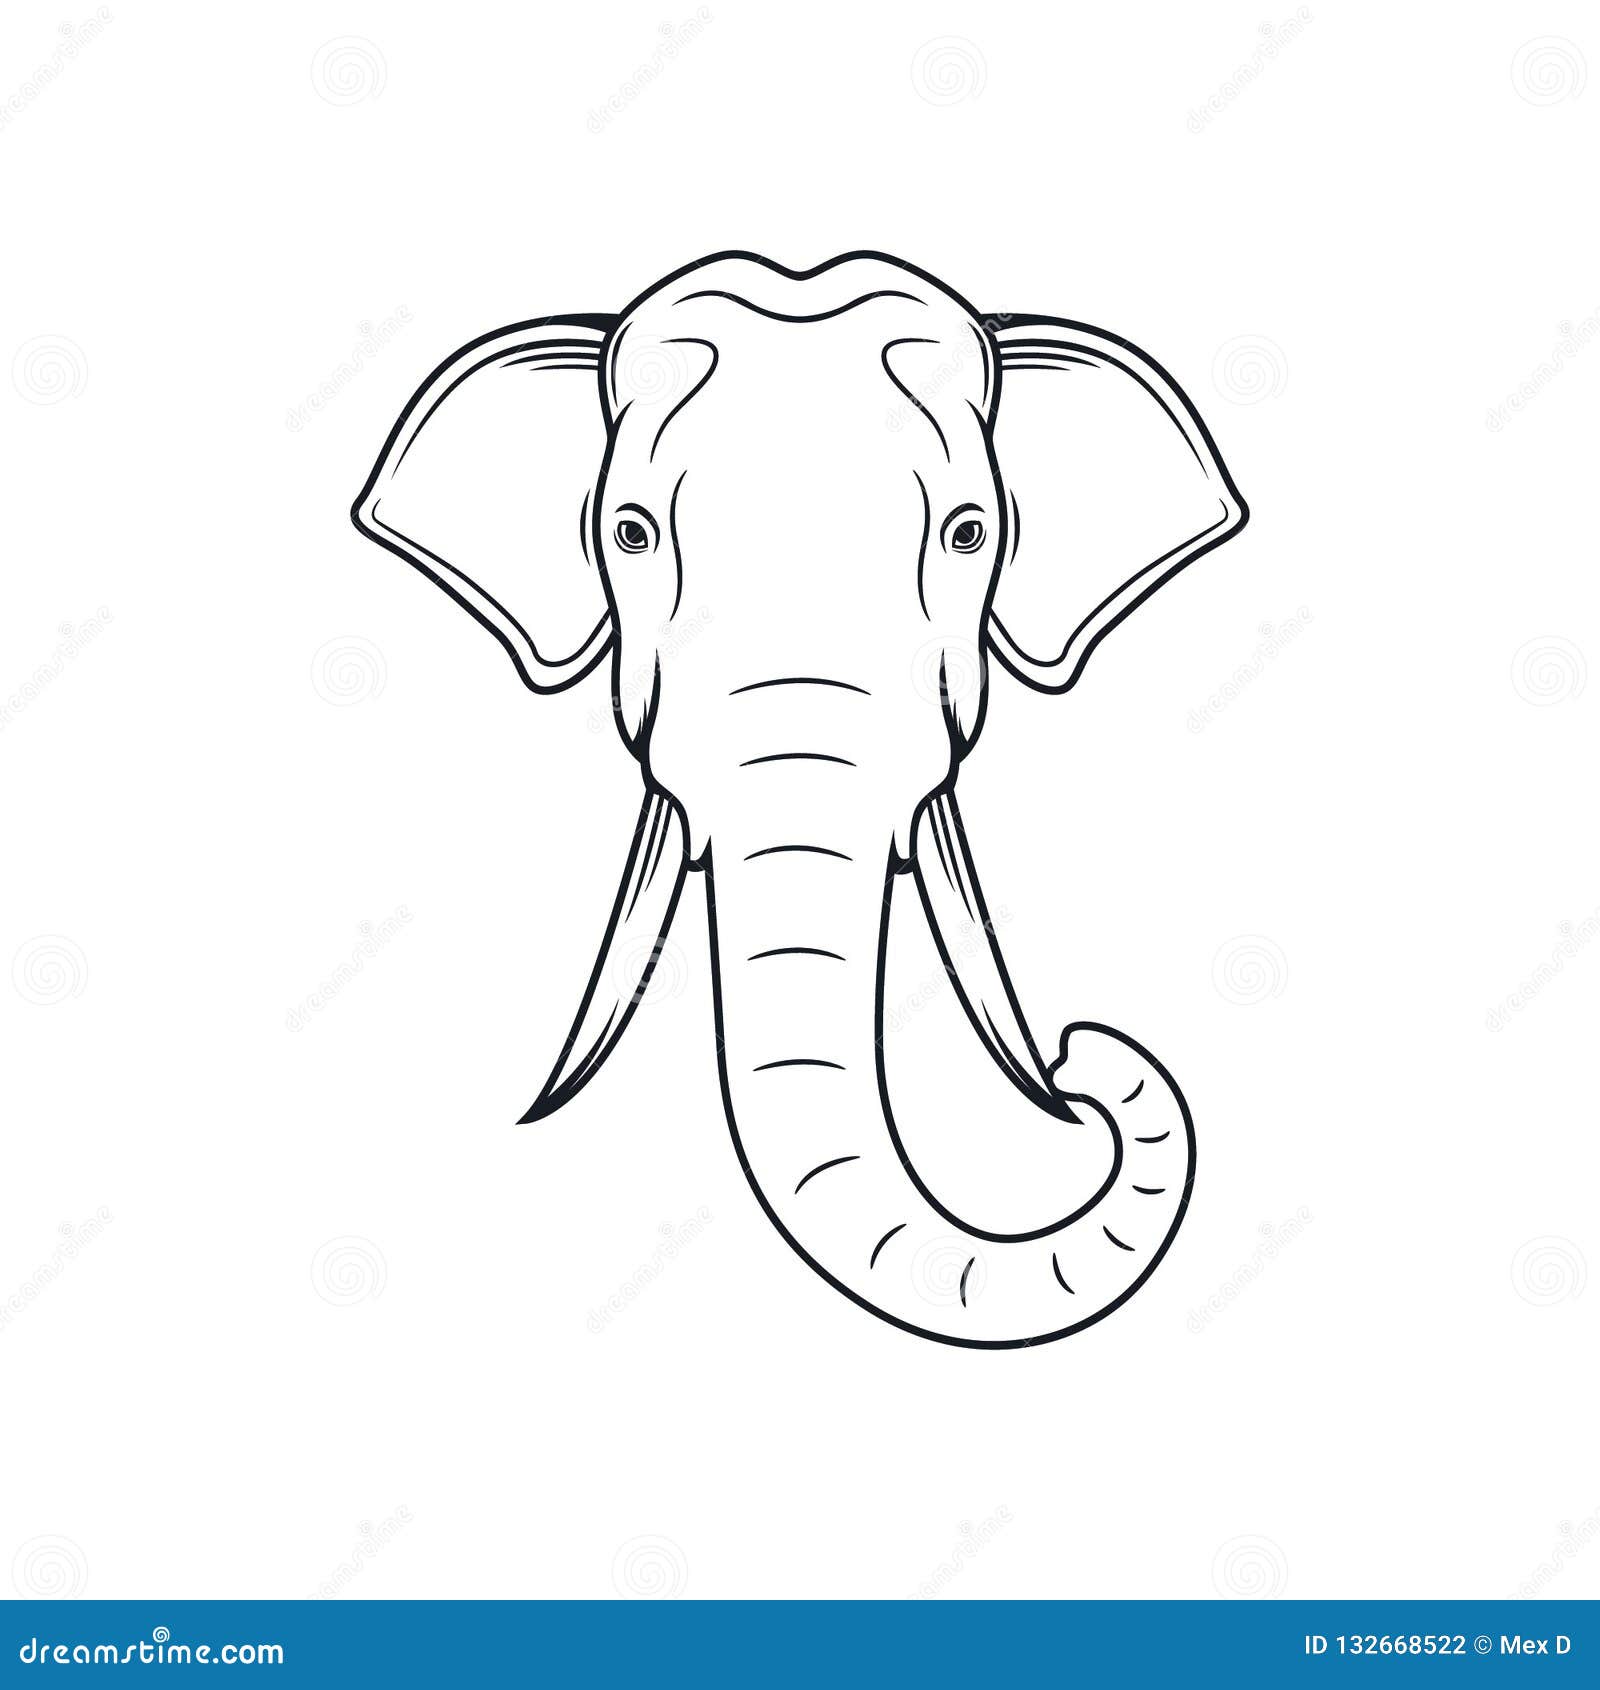 Картинка с слоном голова очертания вбок